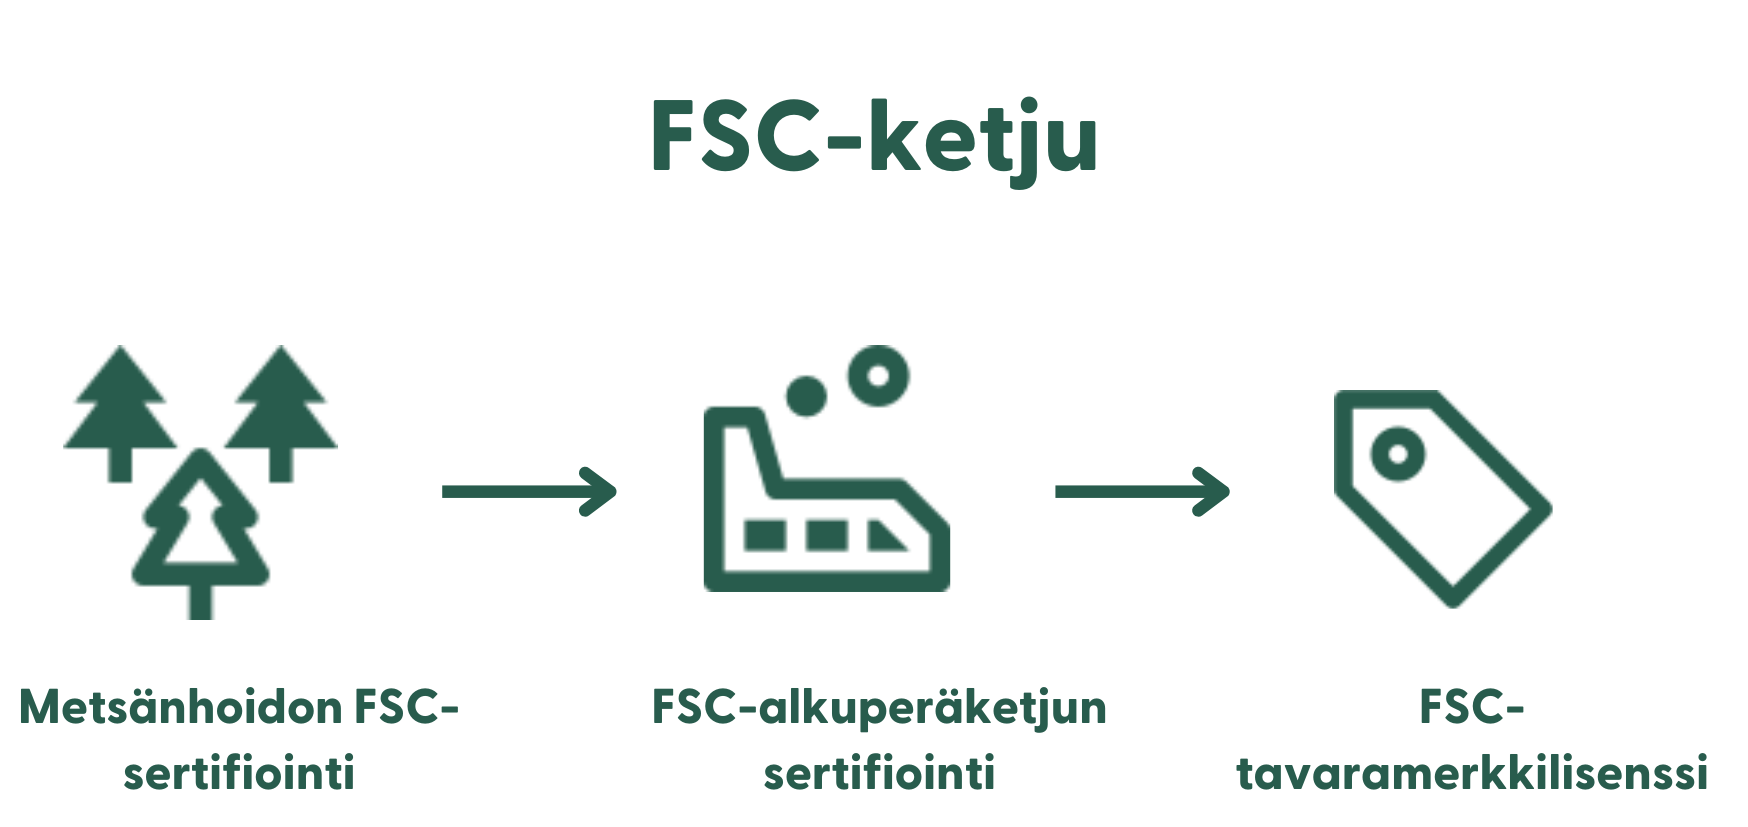 FSC-ketju